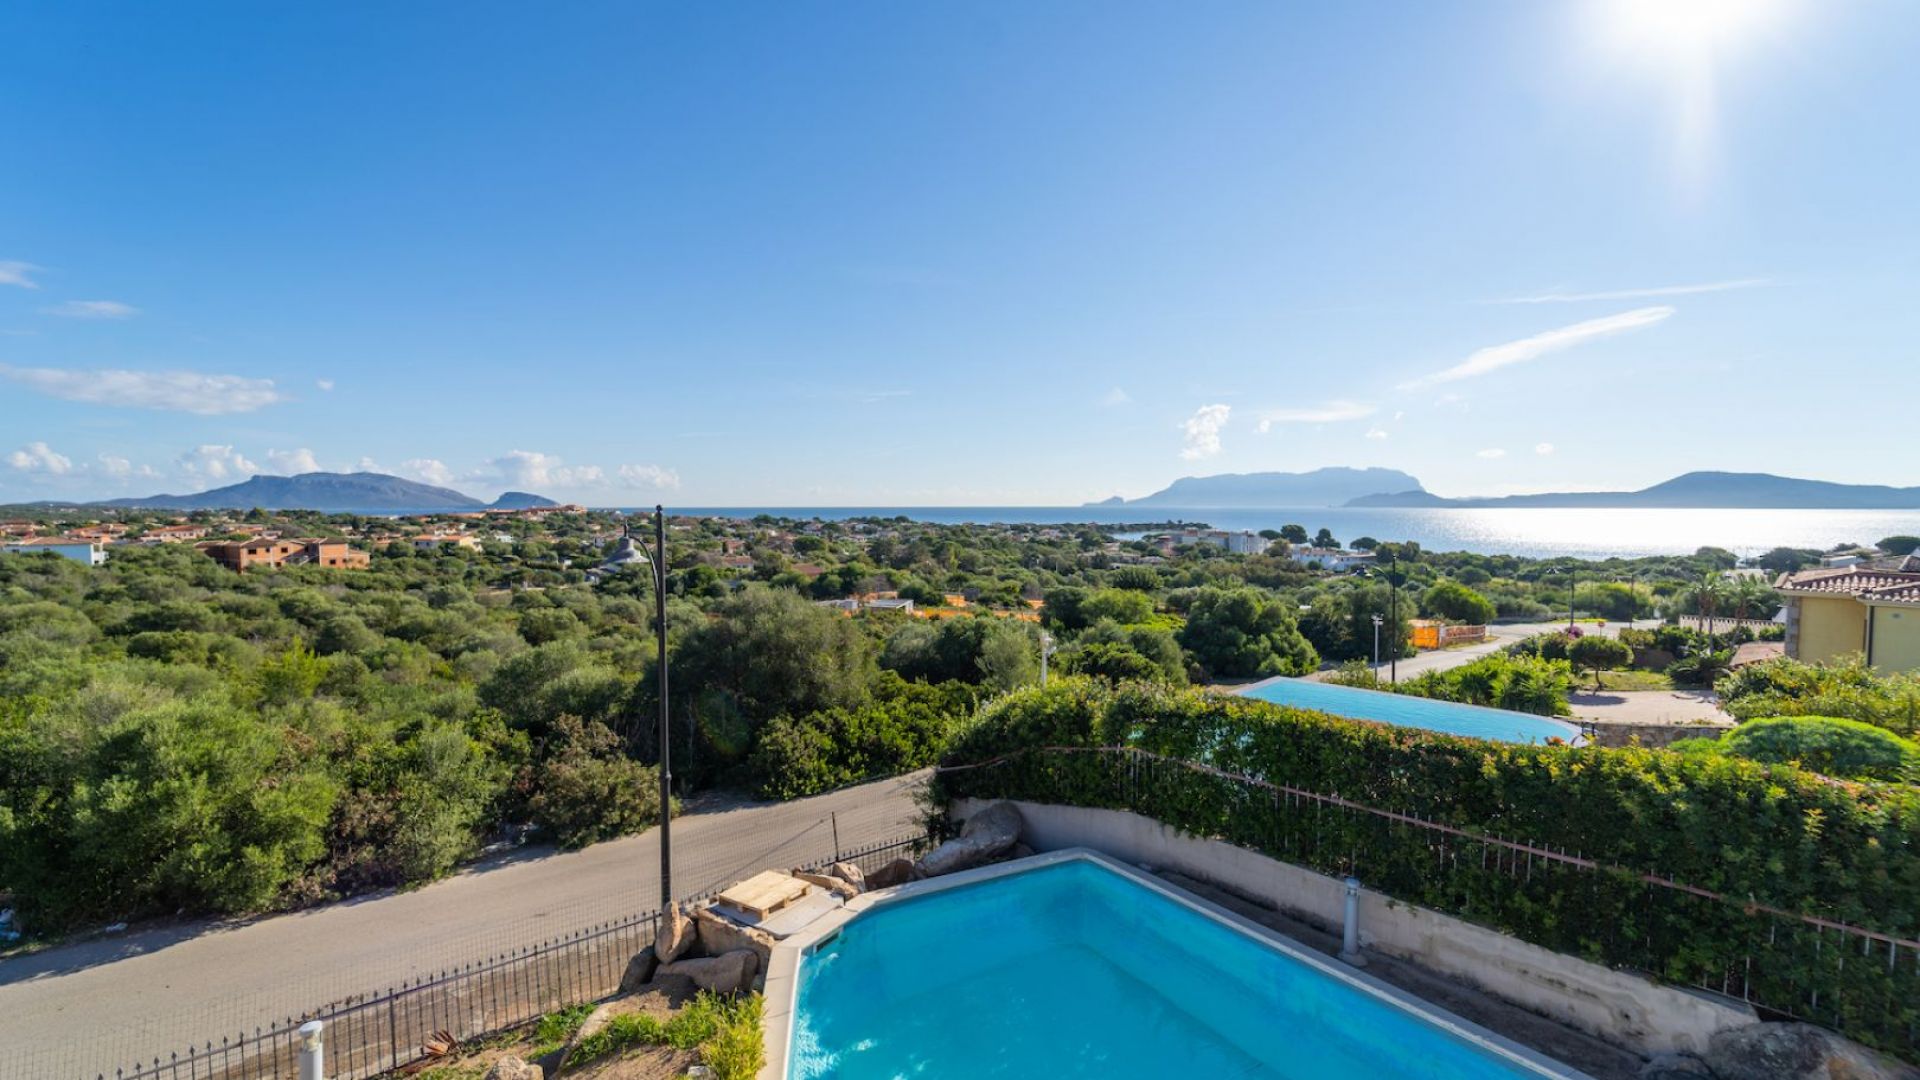 For sale villa in  Olbia Sardegna